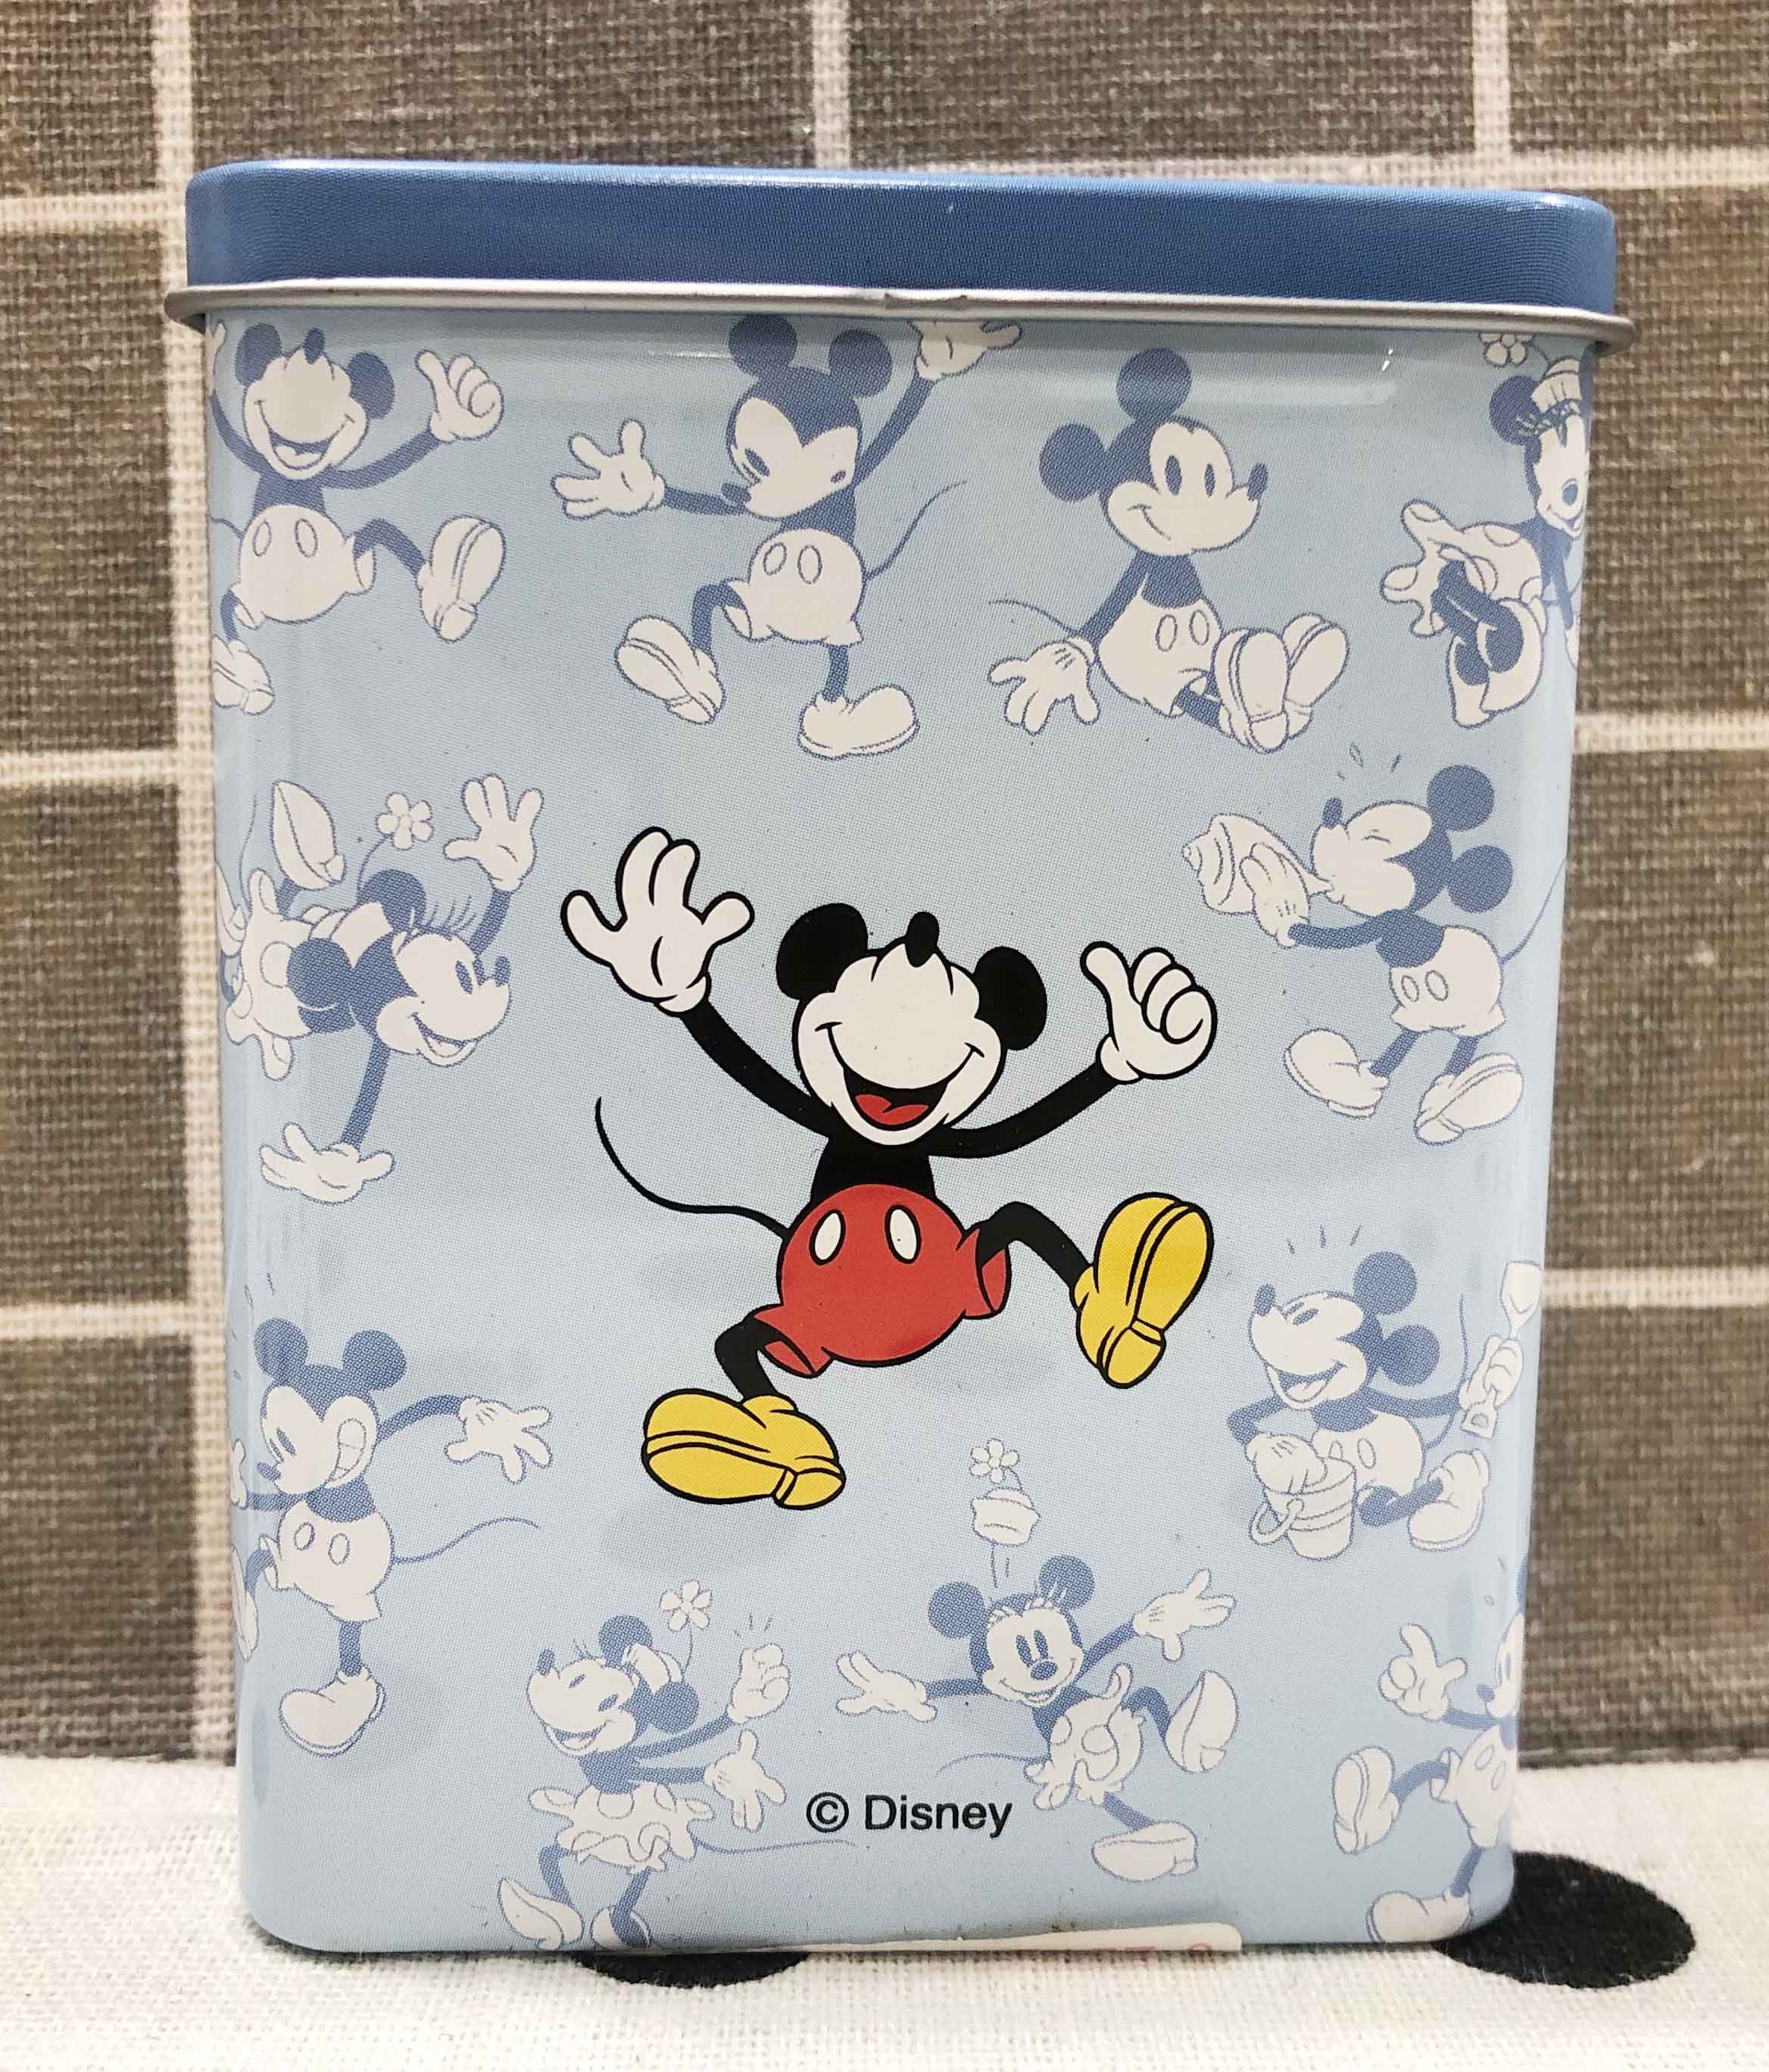 【震撼精品百貨】Micky Mouse 米奇/米妮 OK絆盒-米奇 震撼日式精品百貨